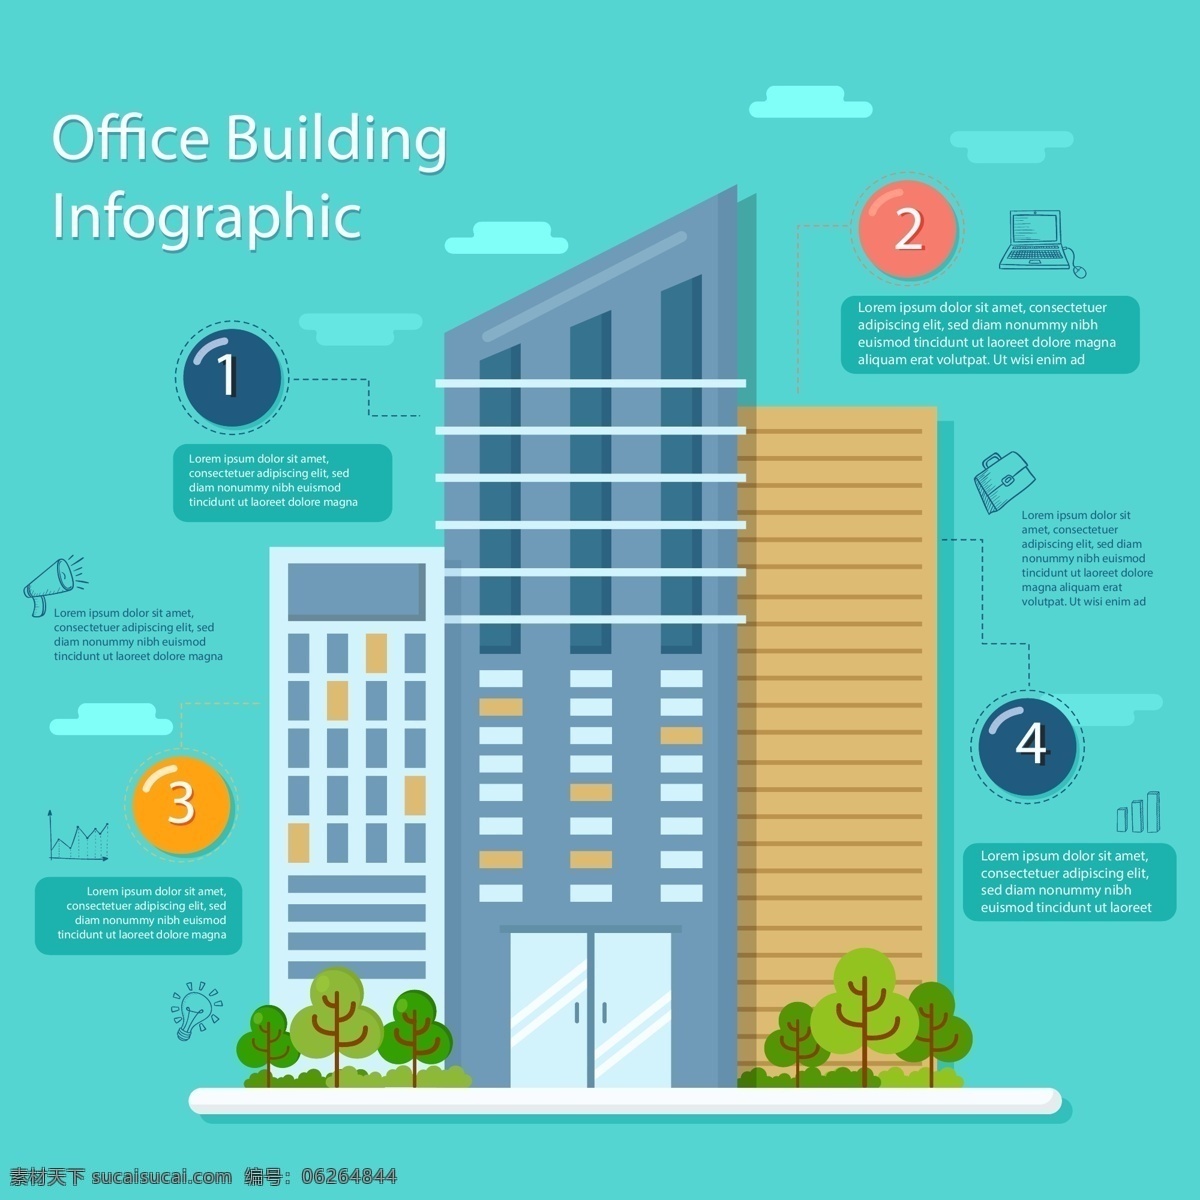 办公楼 信息 图表 资料图 商业 城市 模板 建造 信息图表 办公室 营销 图形 建筑 处理 图表模板 数据 业务信息图表 图像 发展 生活百科 办公用品